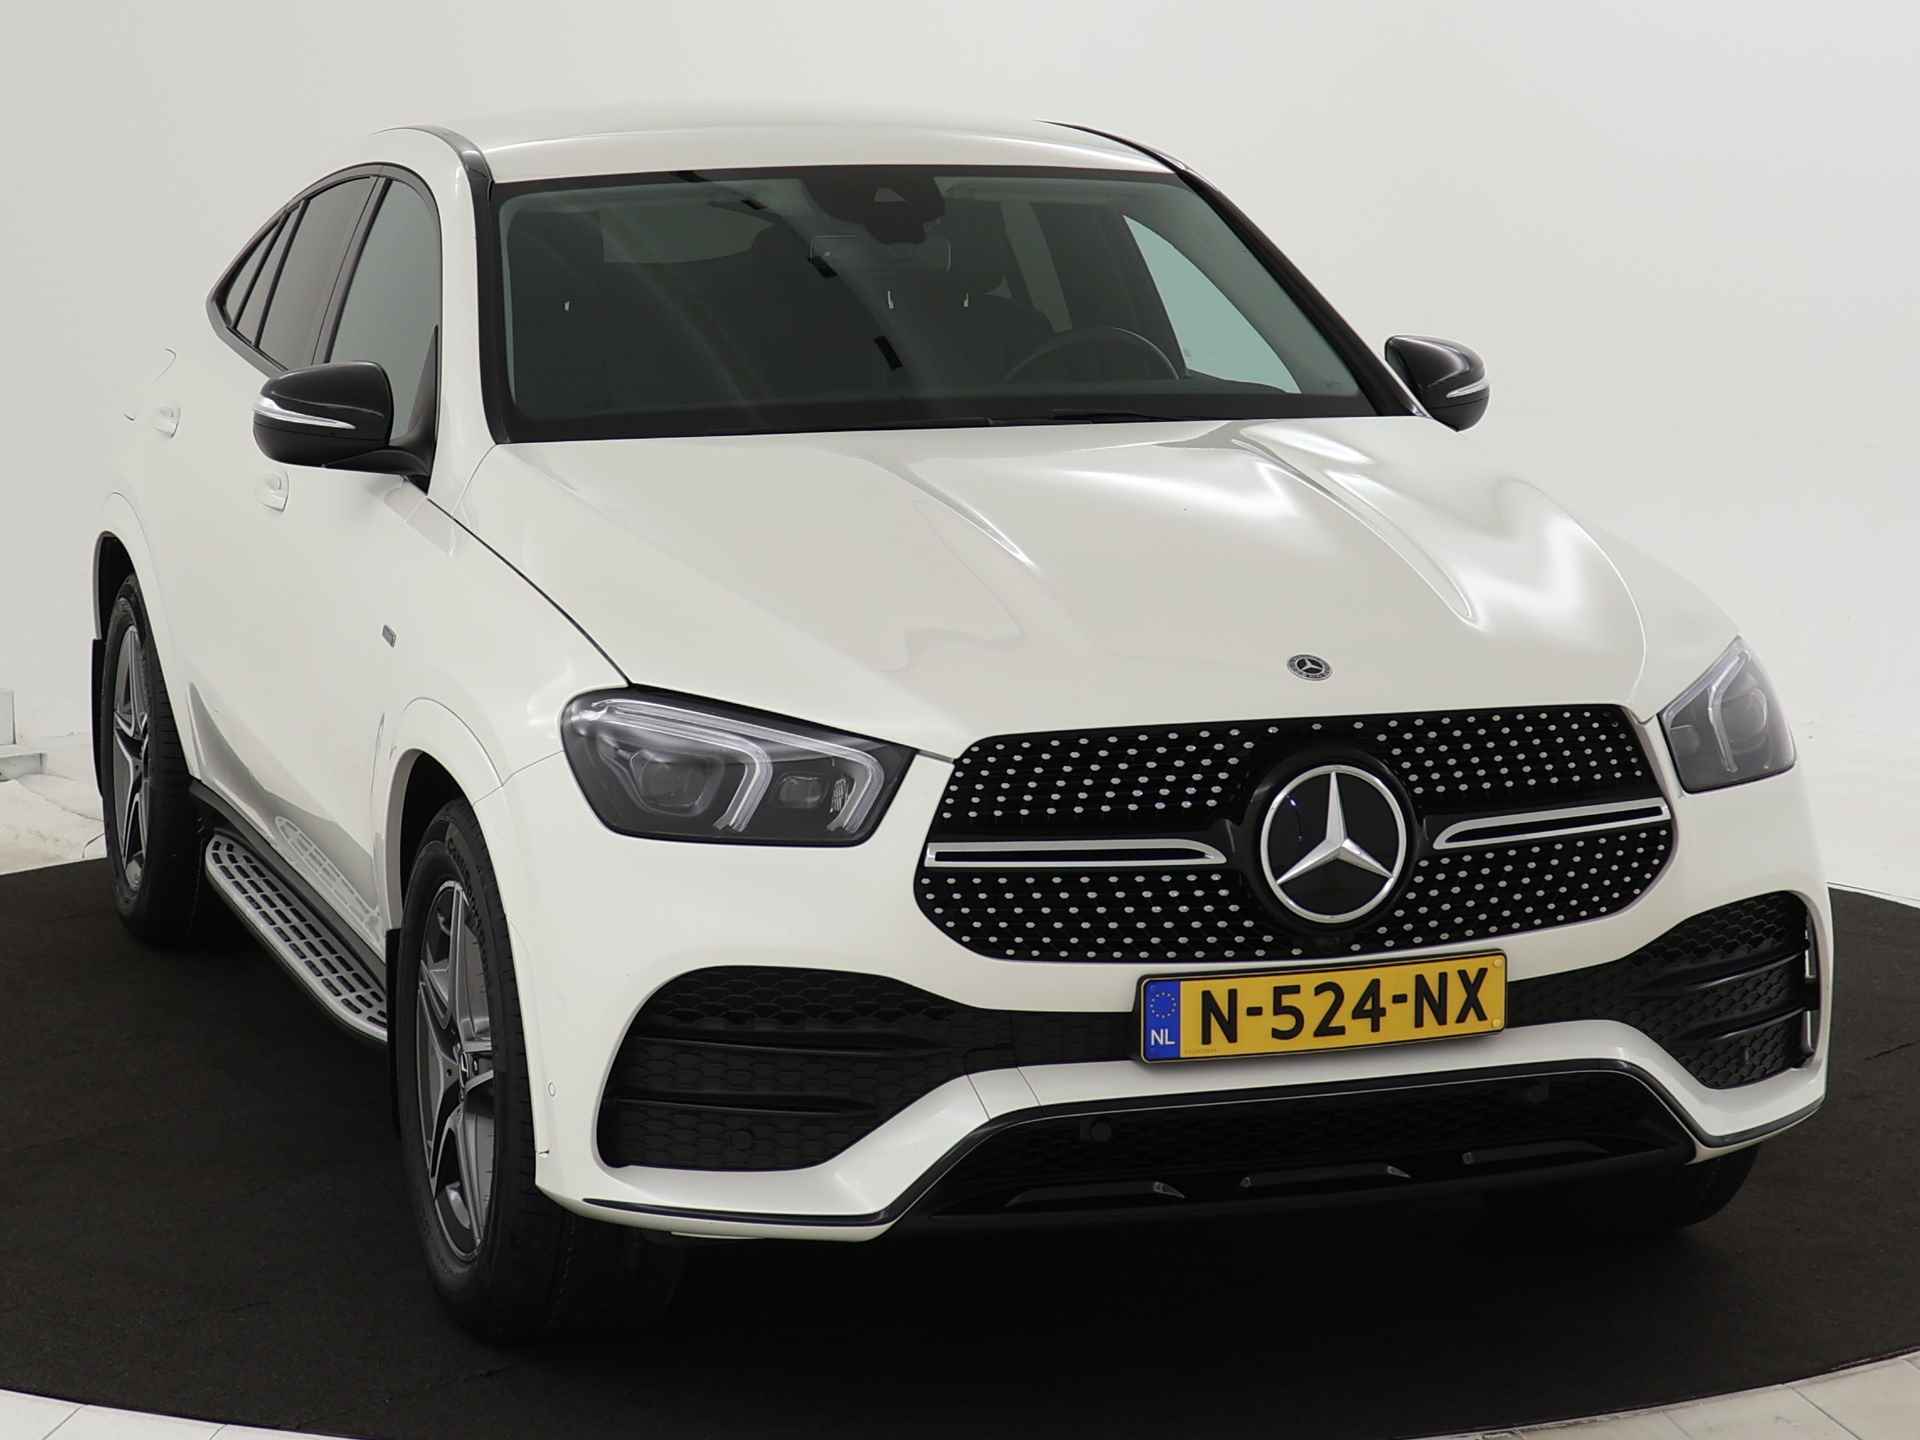 Mercedes-Benz GLE 350 e 4-MATIC AMG Nightpakket Limited 5 spaaks lichtmetalen velgen | Trekhaak | Airmatic | Treeplanken | Alarm klasse 3 |  Augmented Reality | sfeerverlichting | DAB | Parking support | inclusief 24 maanden MB Certified garantie voor europa - 28/45